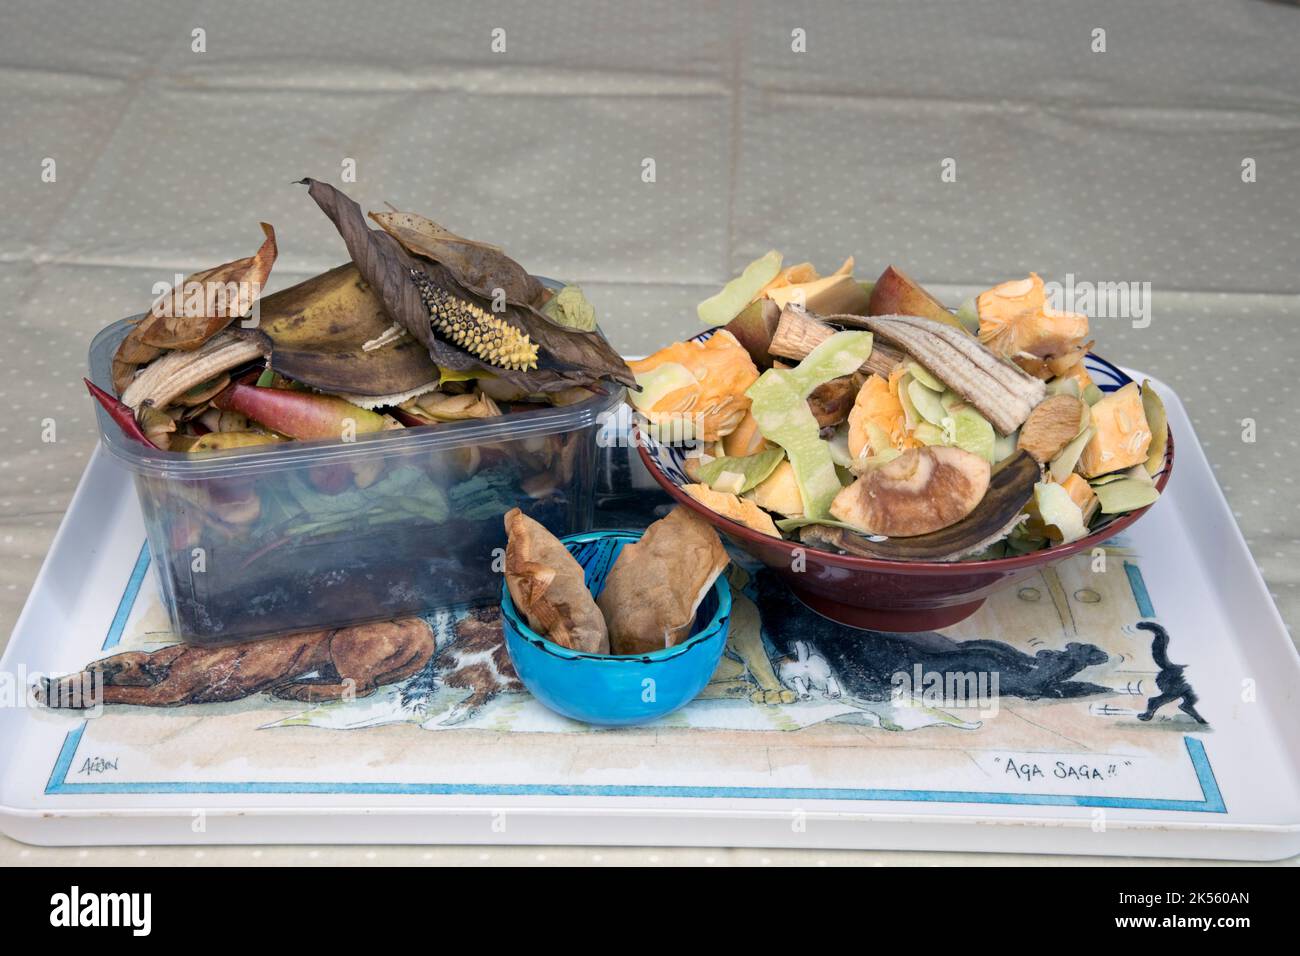 Contenitori di rifiuti alimentari messi da parte per il compostaggio Foto Stock